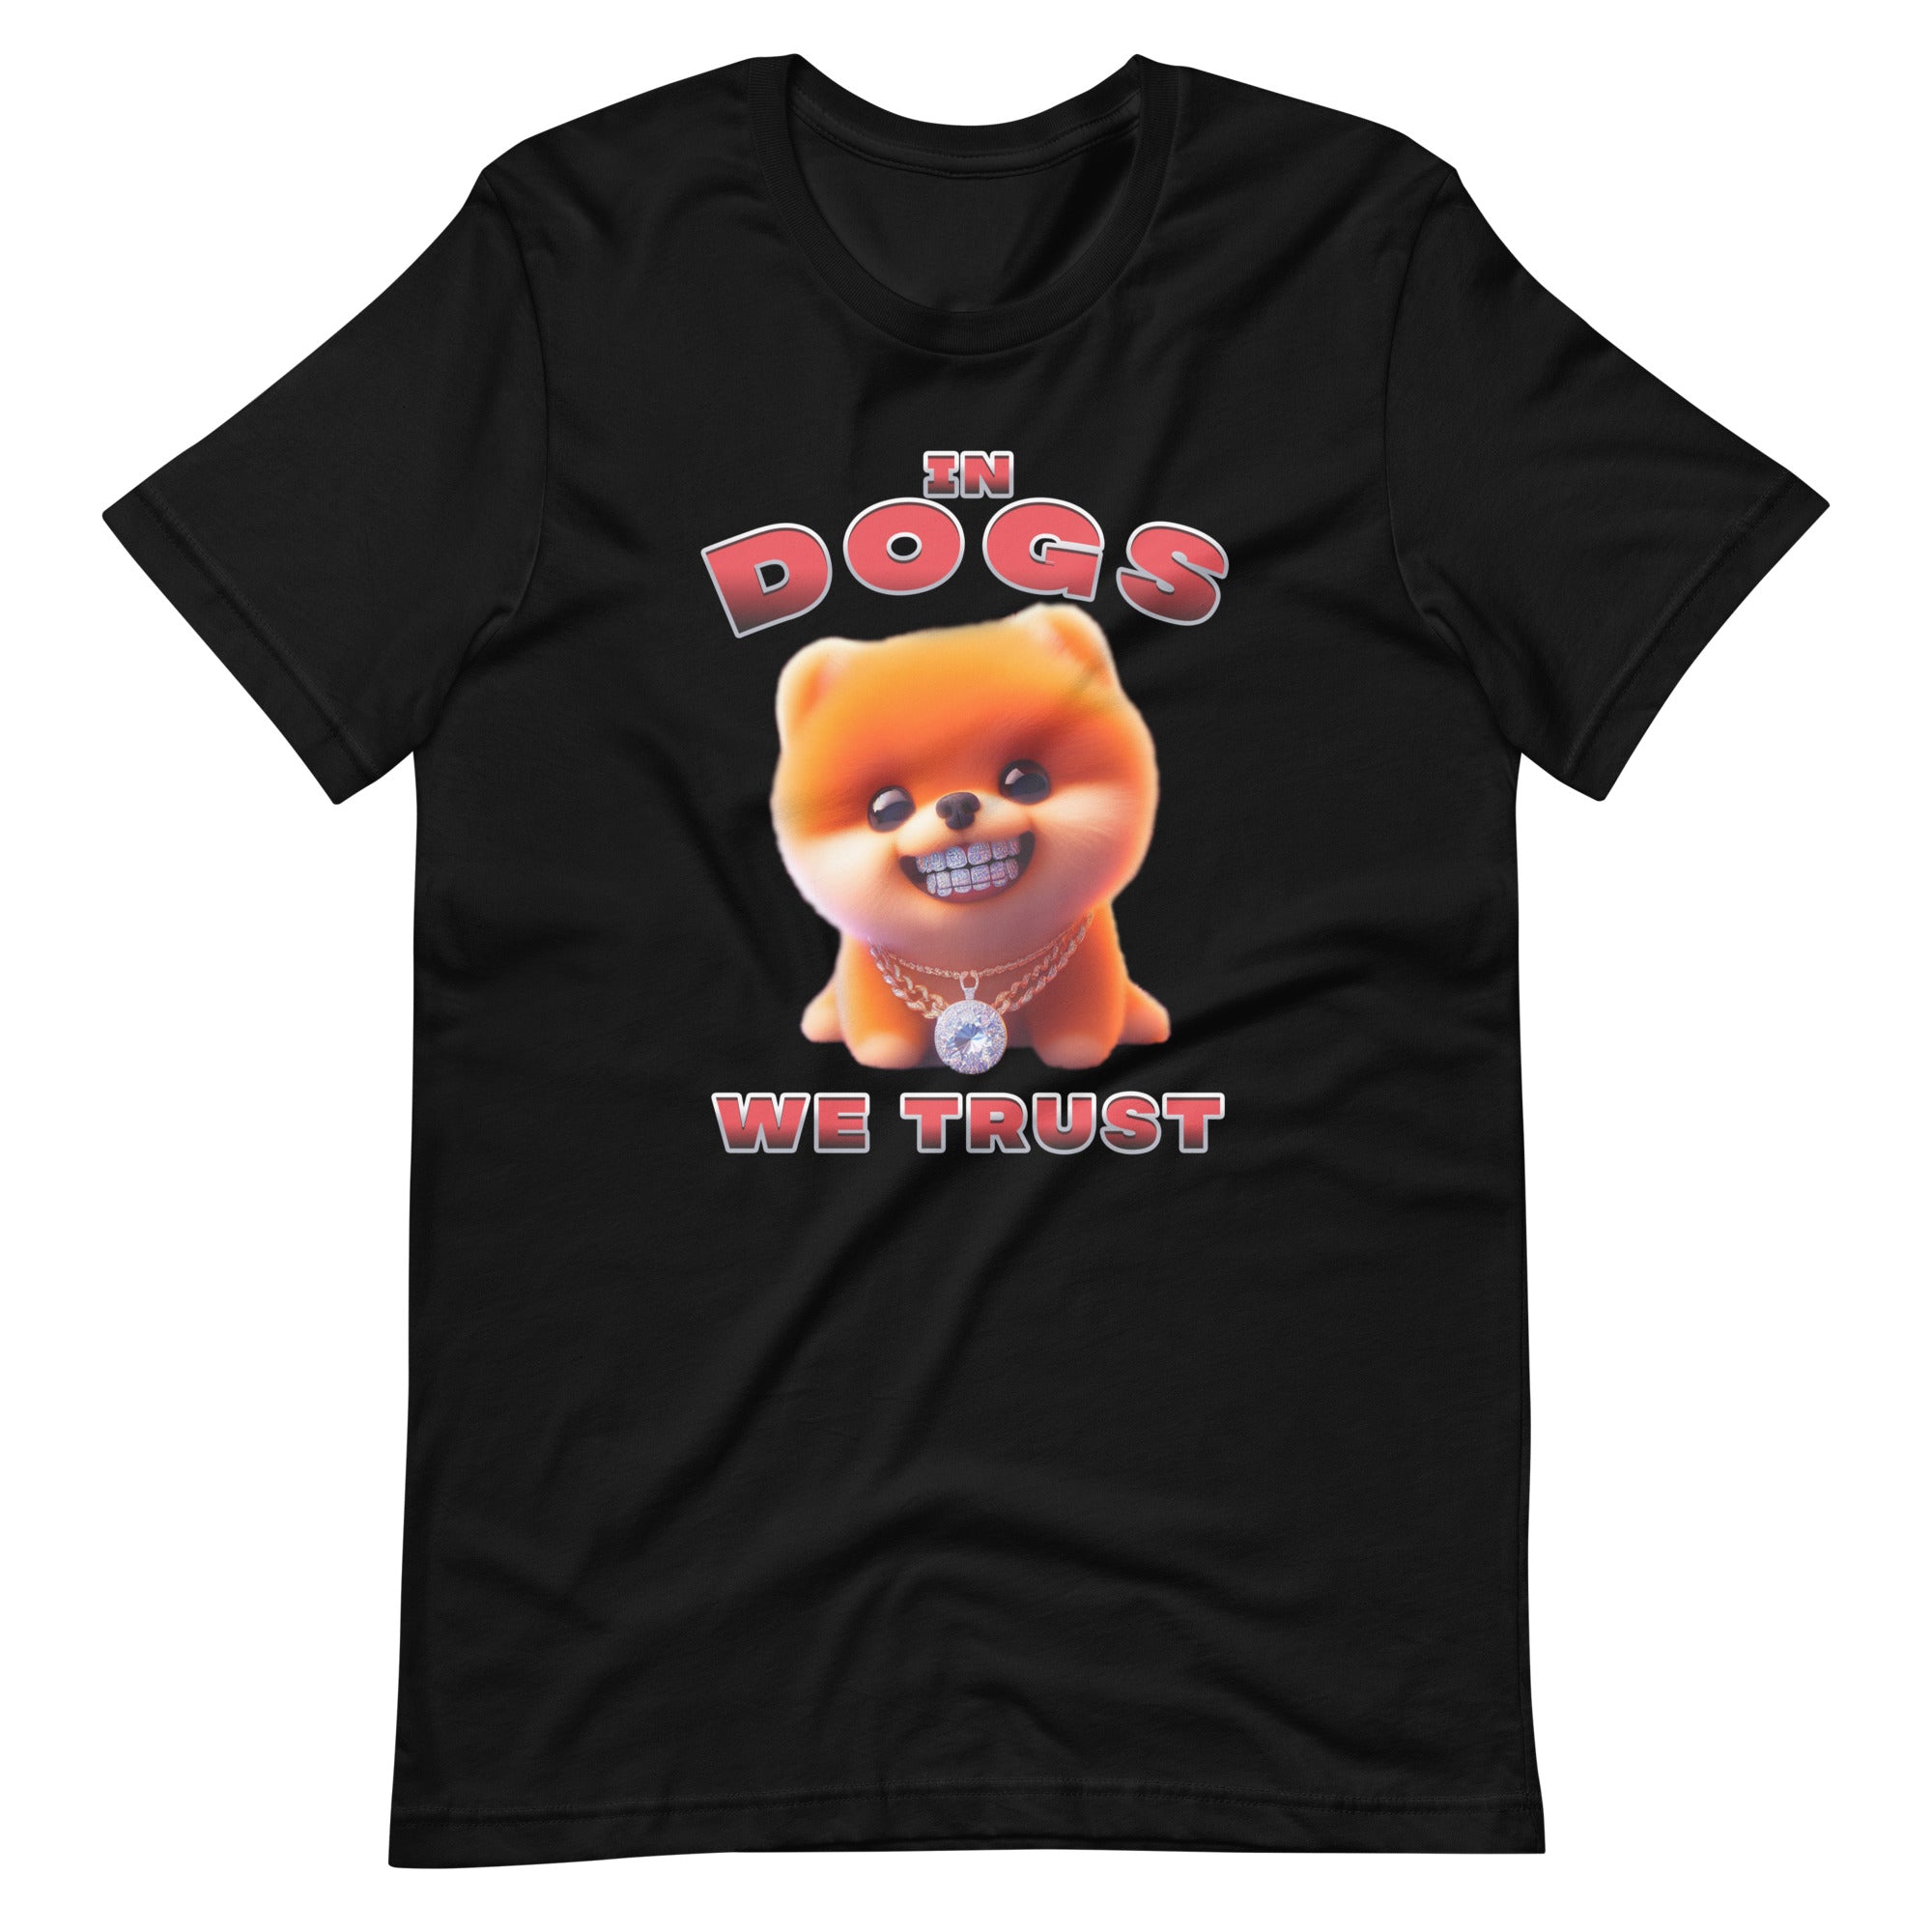 "In Dogs We Trust" T-shirt - Pomeranian